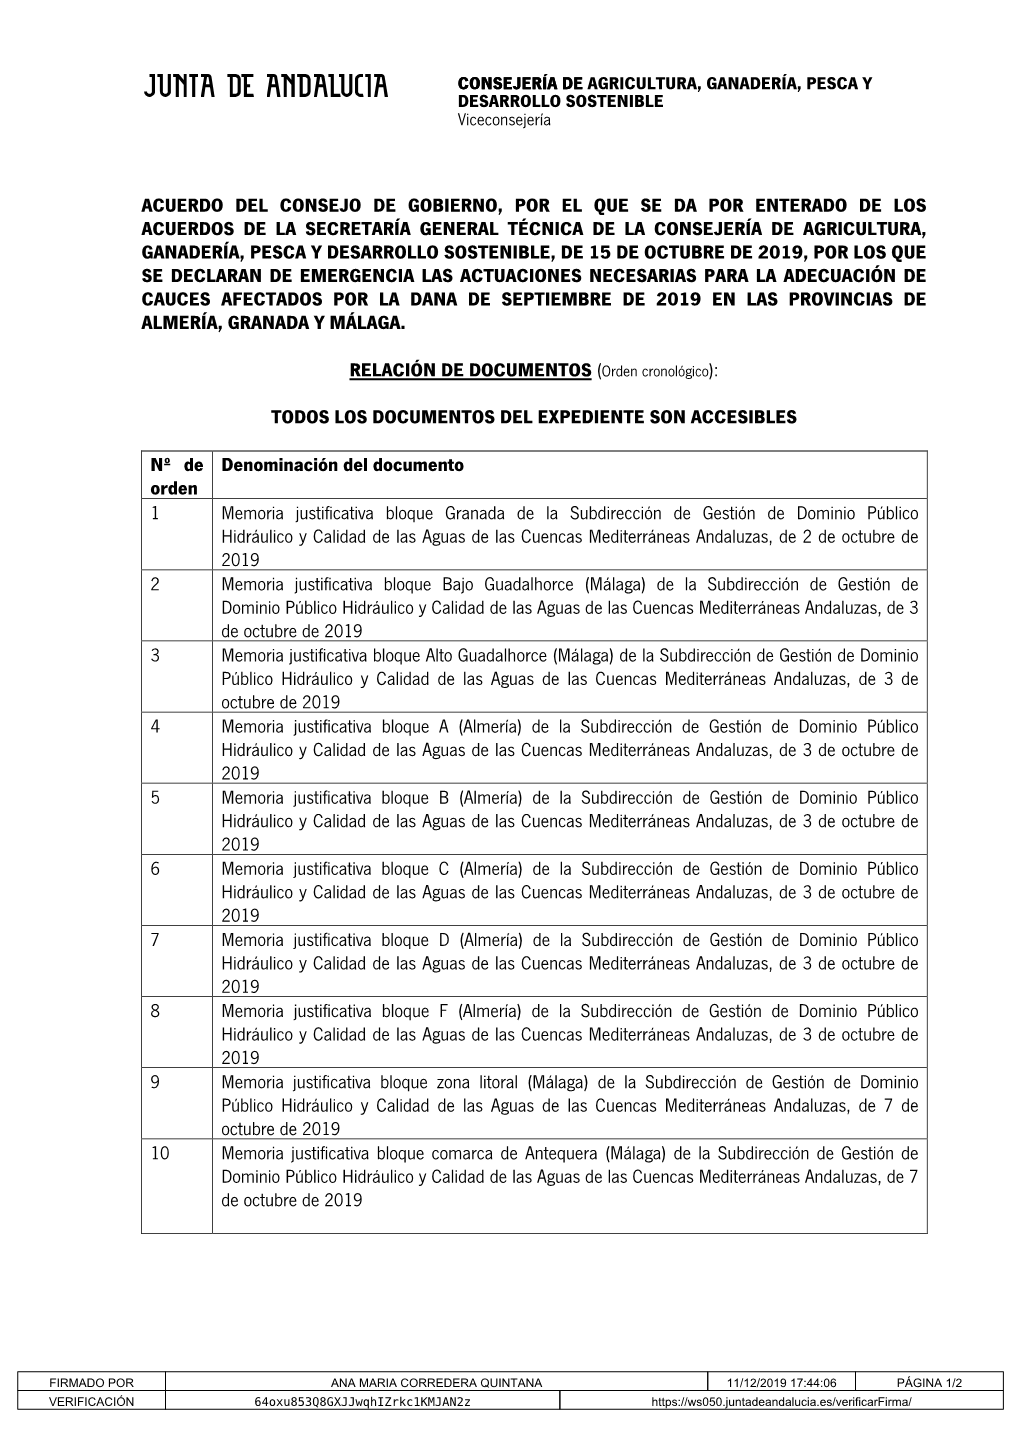 Expediente Acuerdo CG Se Da Por Enterado Declaración Emergencia Adecuación Cauces En Almería, Granada Y Málaga